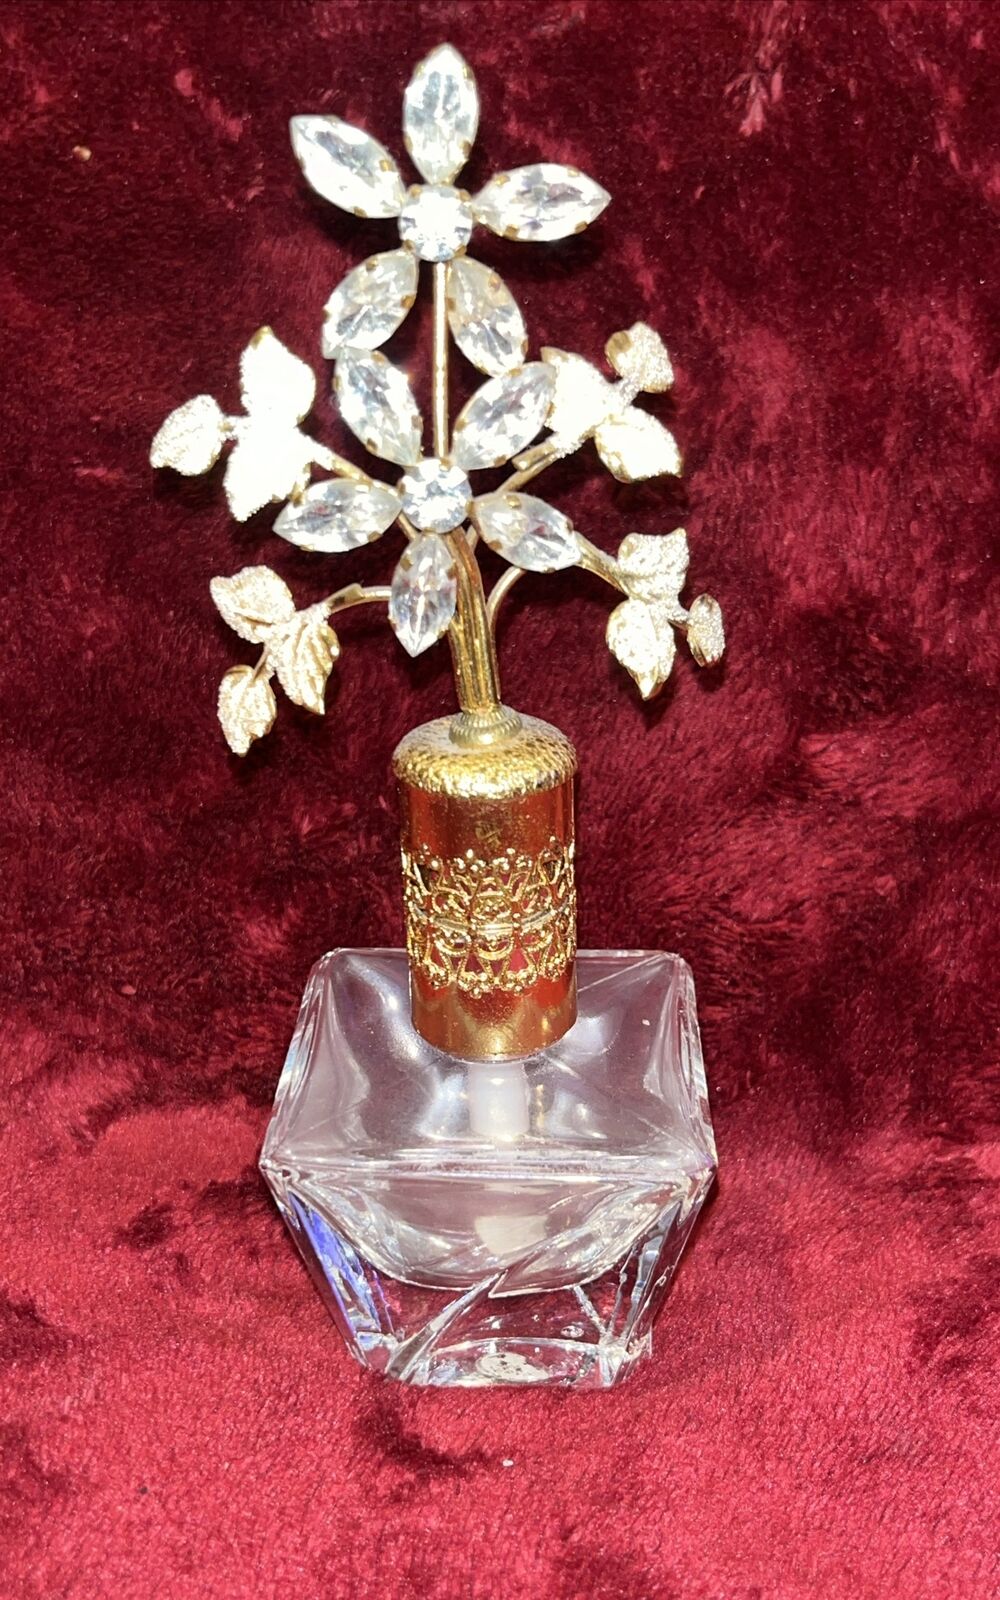 Beautiful Vintage Perfume Bottle Glass Filigree Rhinestone Flowers Austria